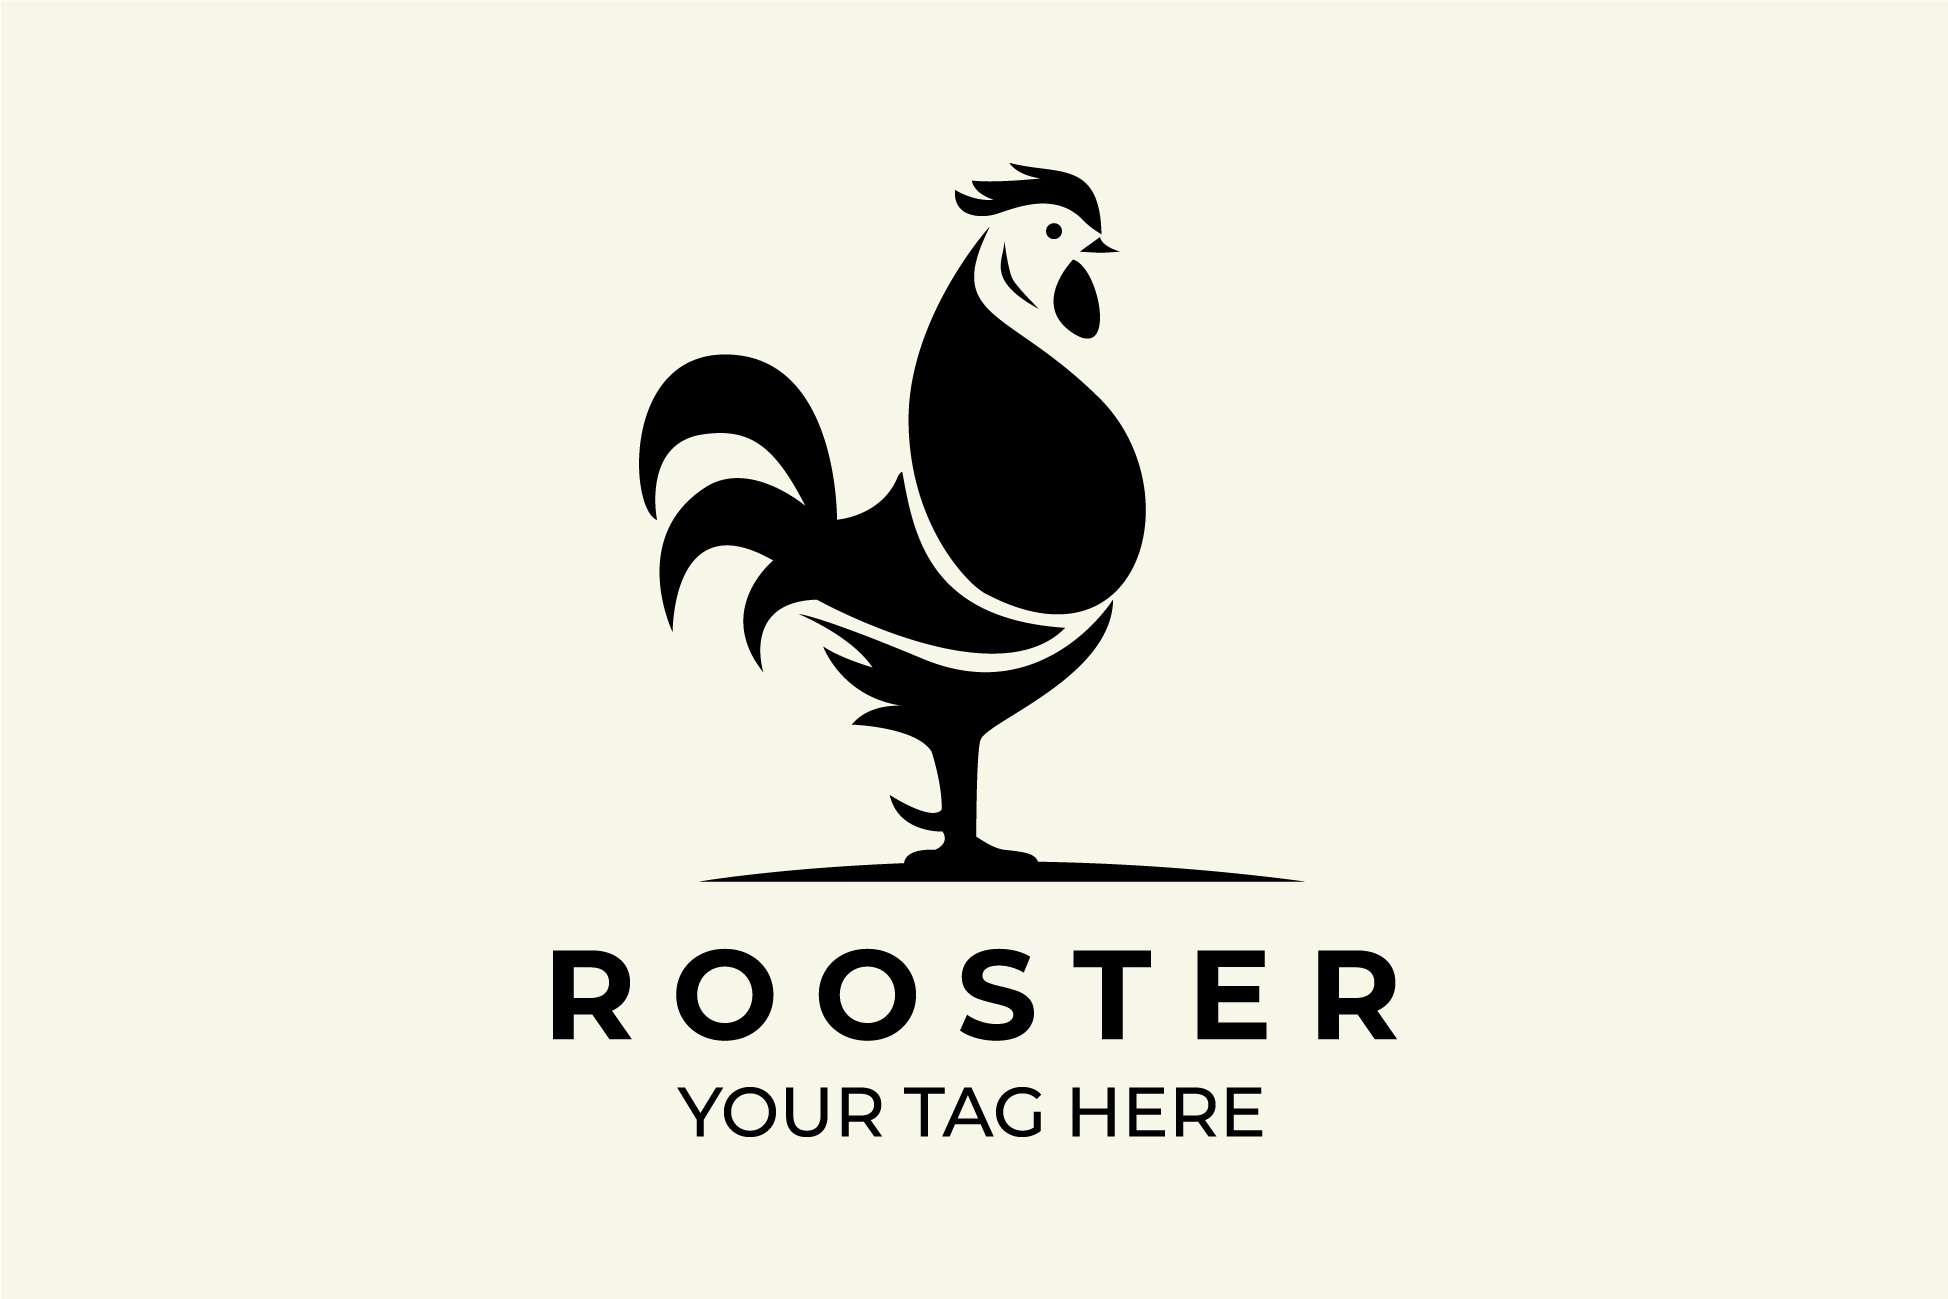 rooster logo illustration black cover image.